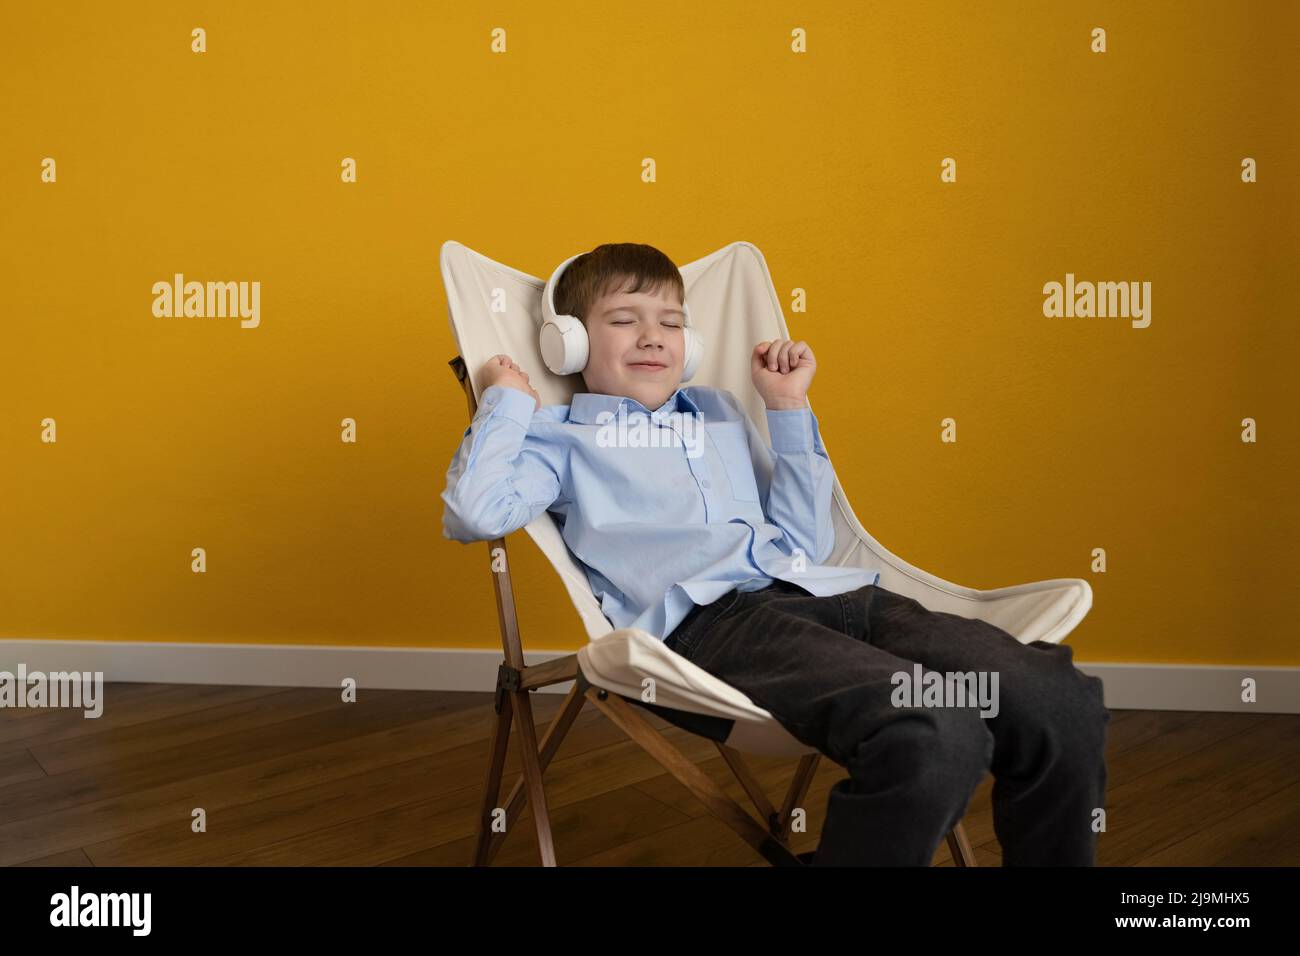 Fröhlicher Junge im blauen Hemd, der die Augen schließt und tanzt, während er auf dem Liegestuhl an der gelben Wand sitzt und Musik in kabellosen Kopfhörern hört Stockfoto